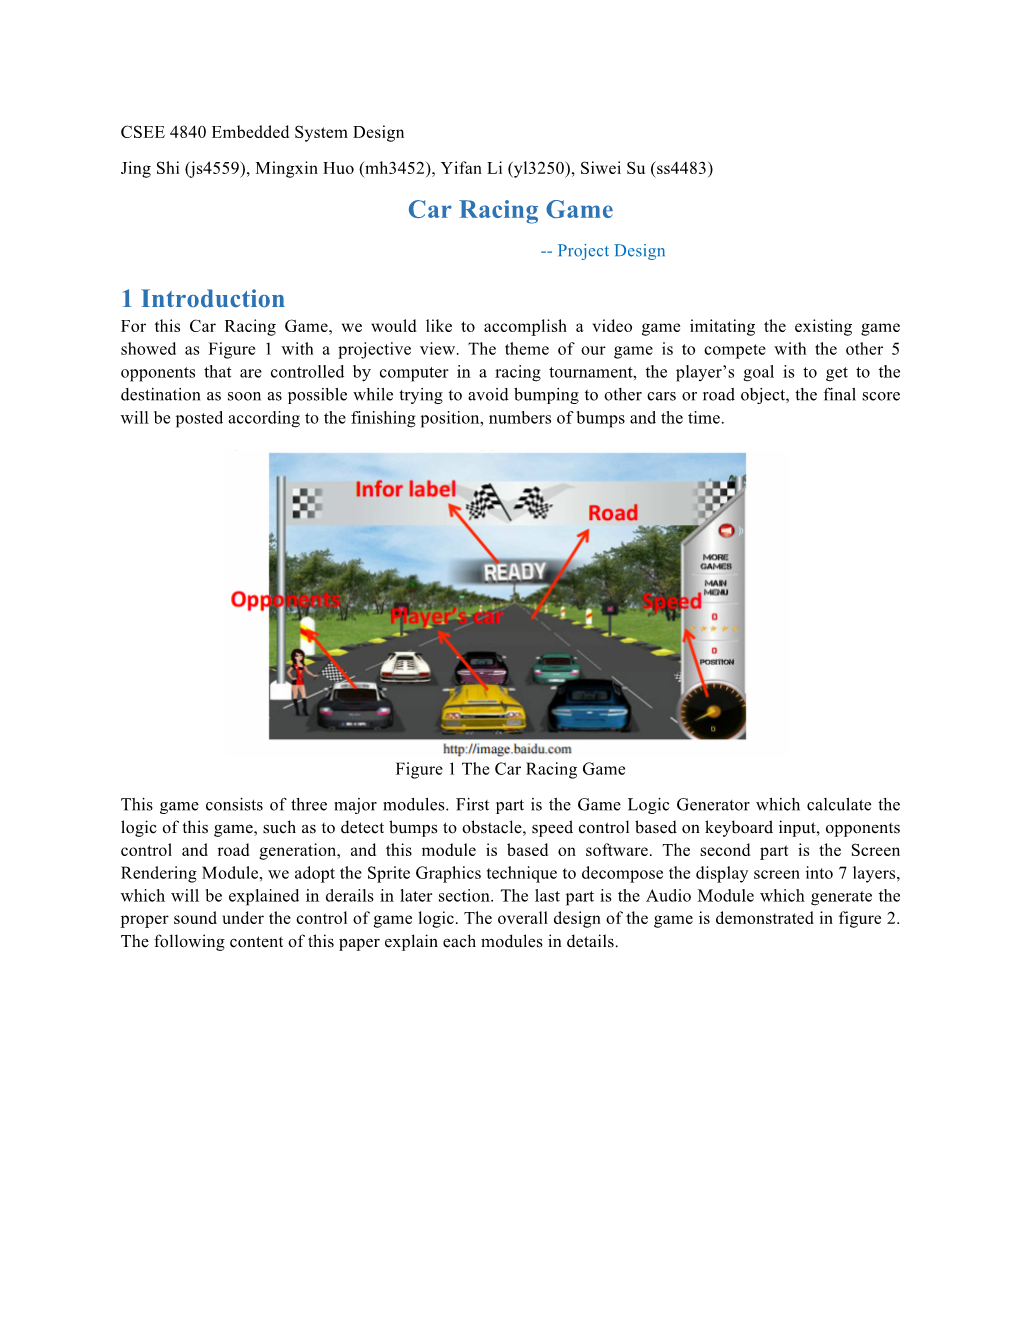 Car Racing Game 1 Introduction